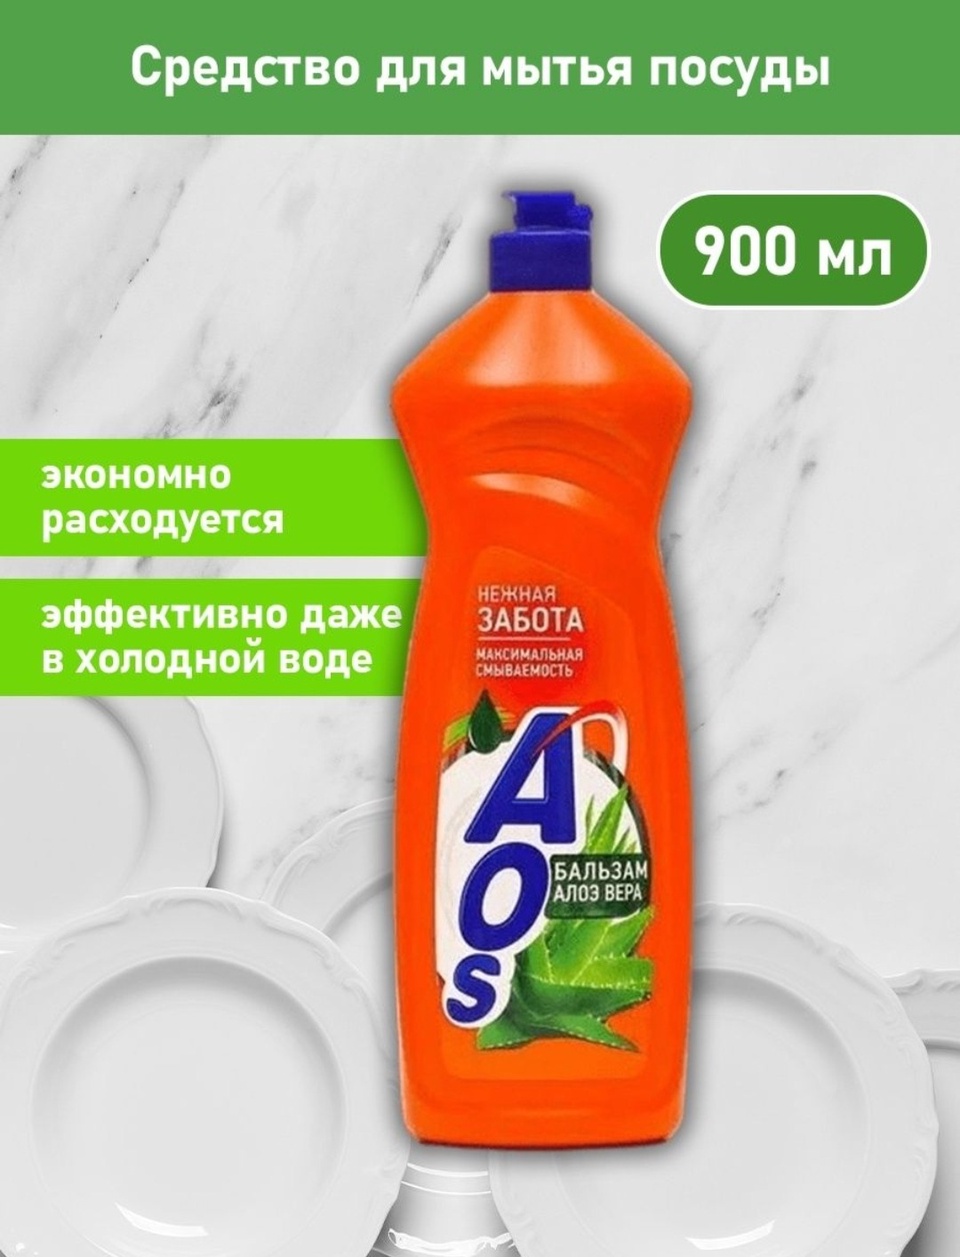 AOS средство для мытья посуды - 235 ₽, заказать онлайн.